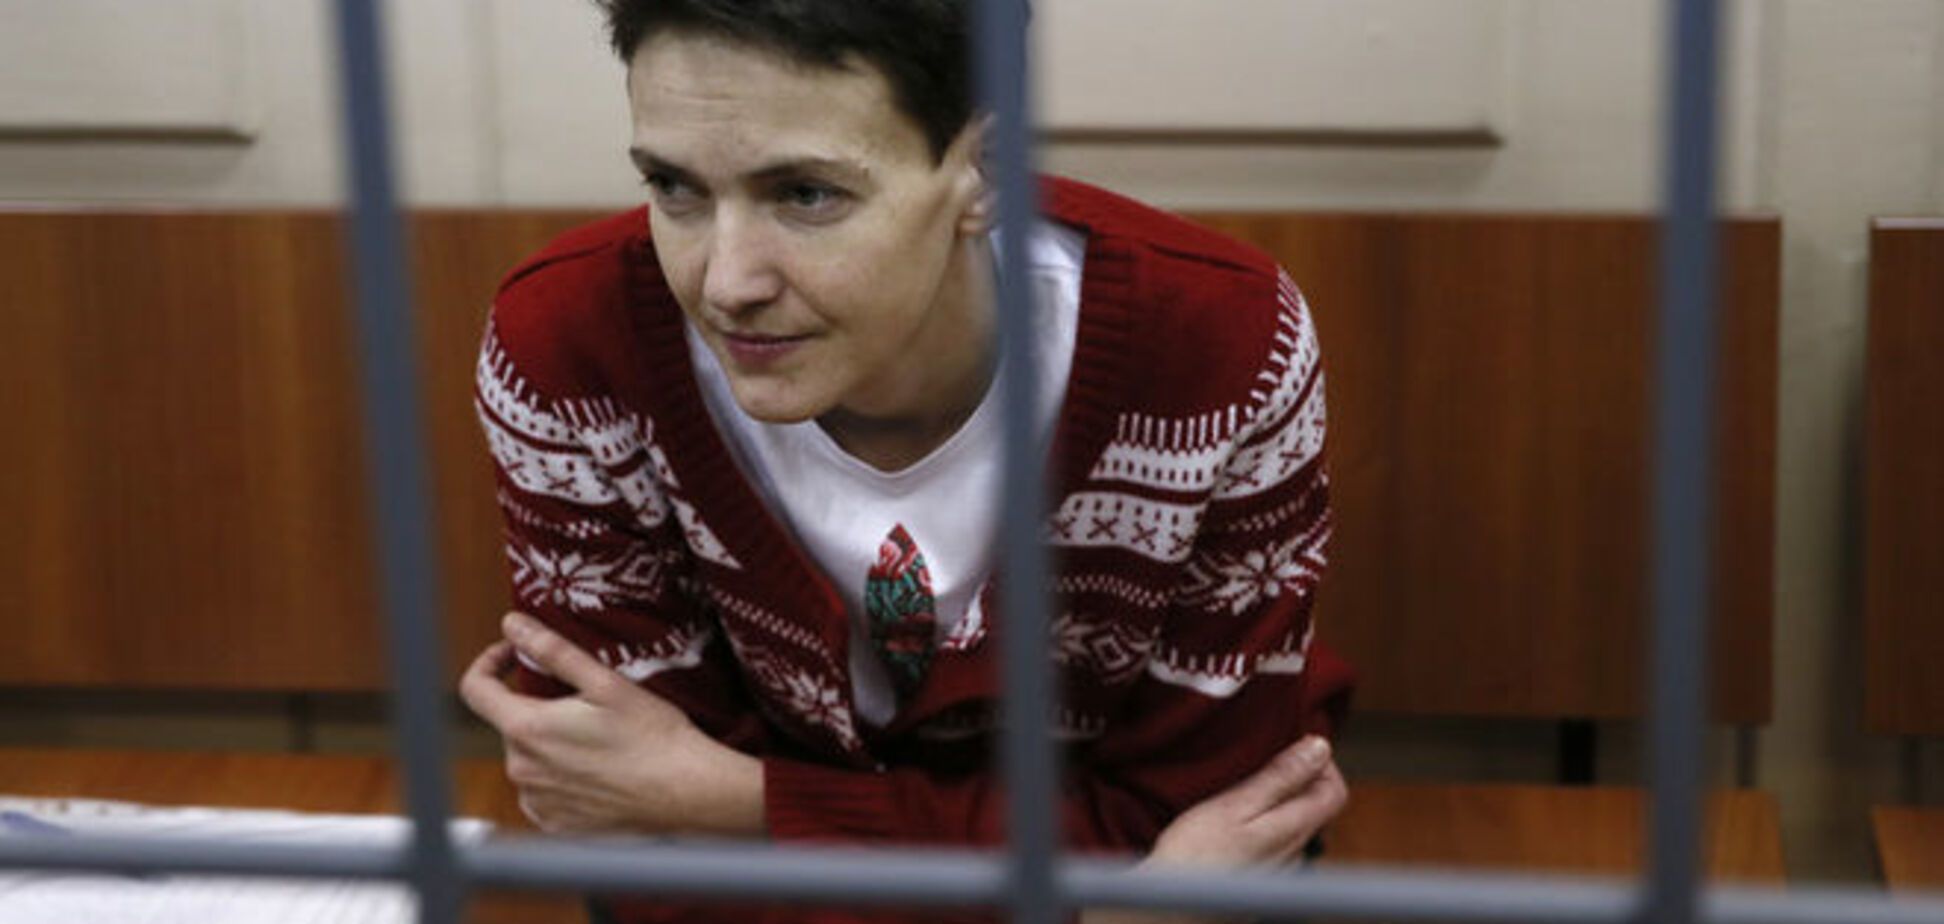 Алиби Савченко подтвердилось видеозаписью террористов - адвокат